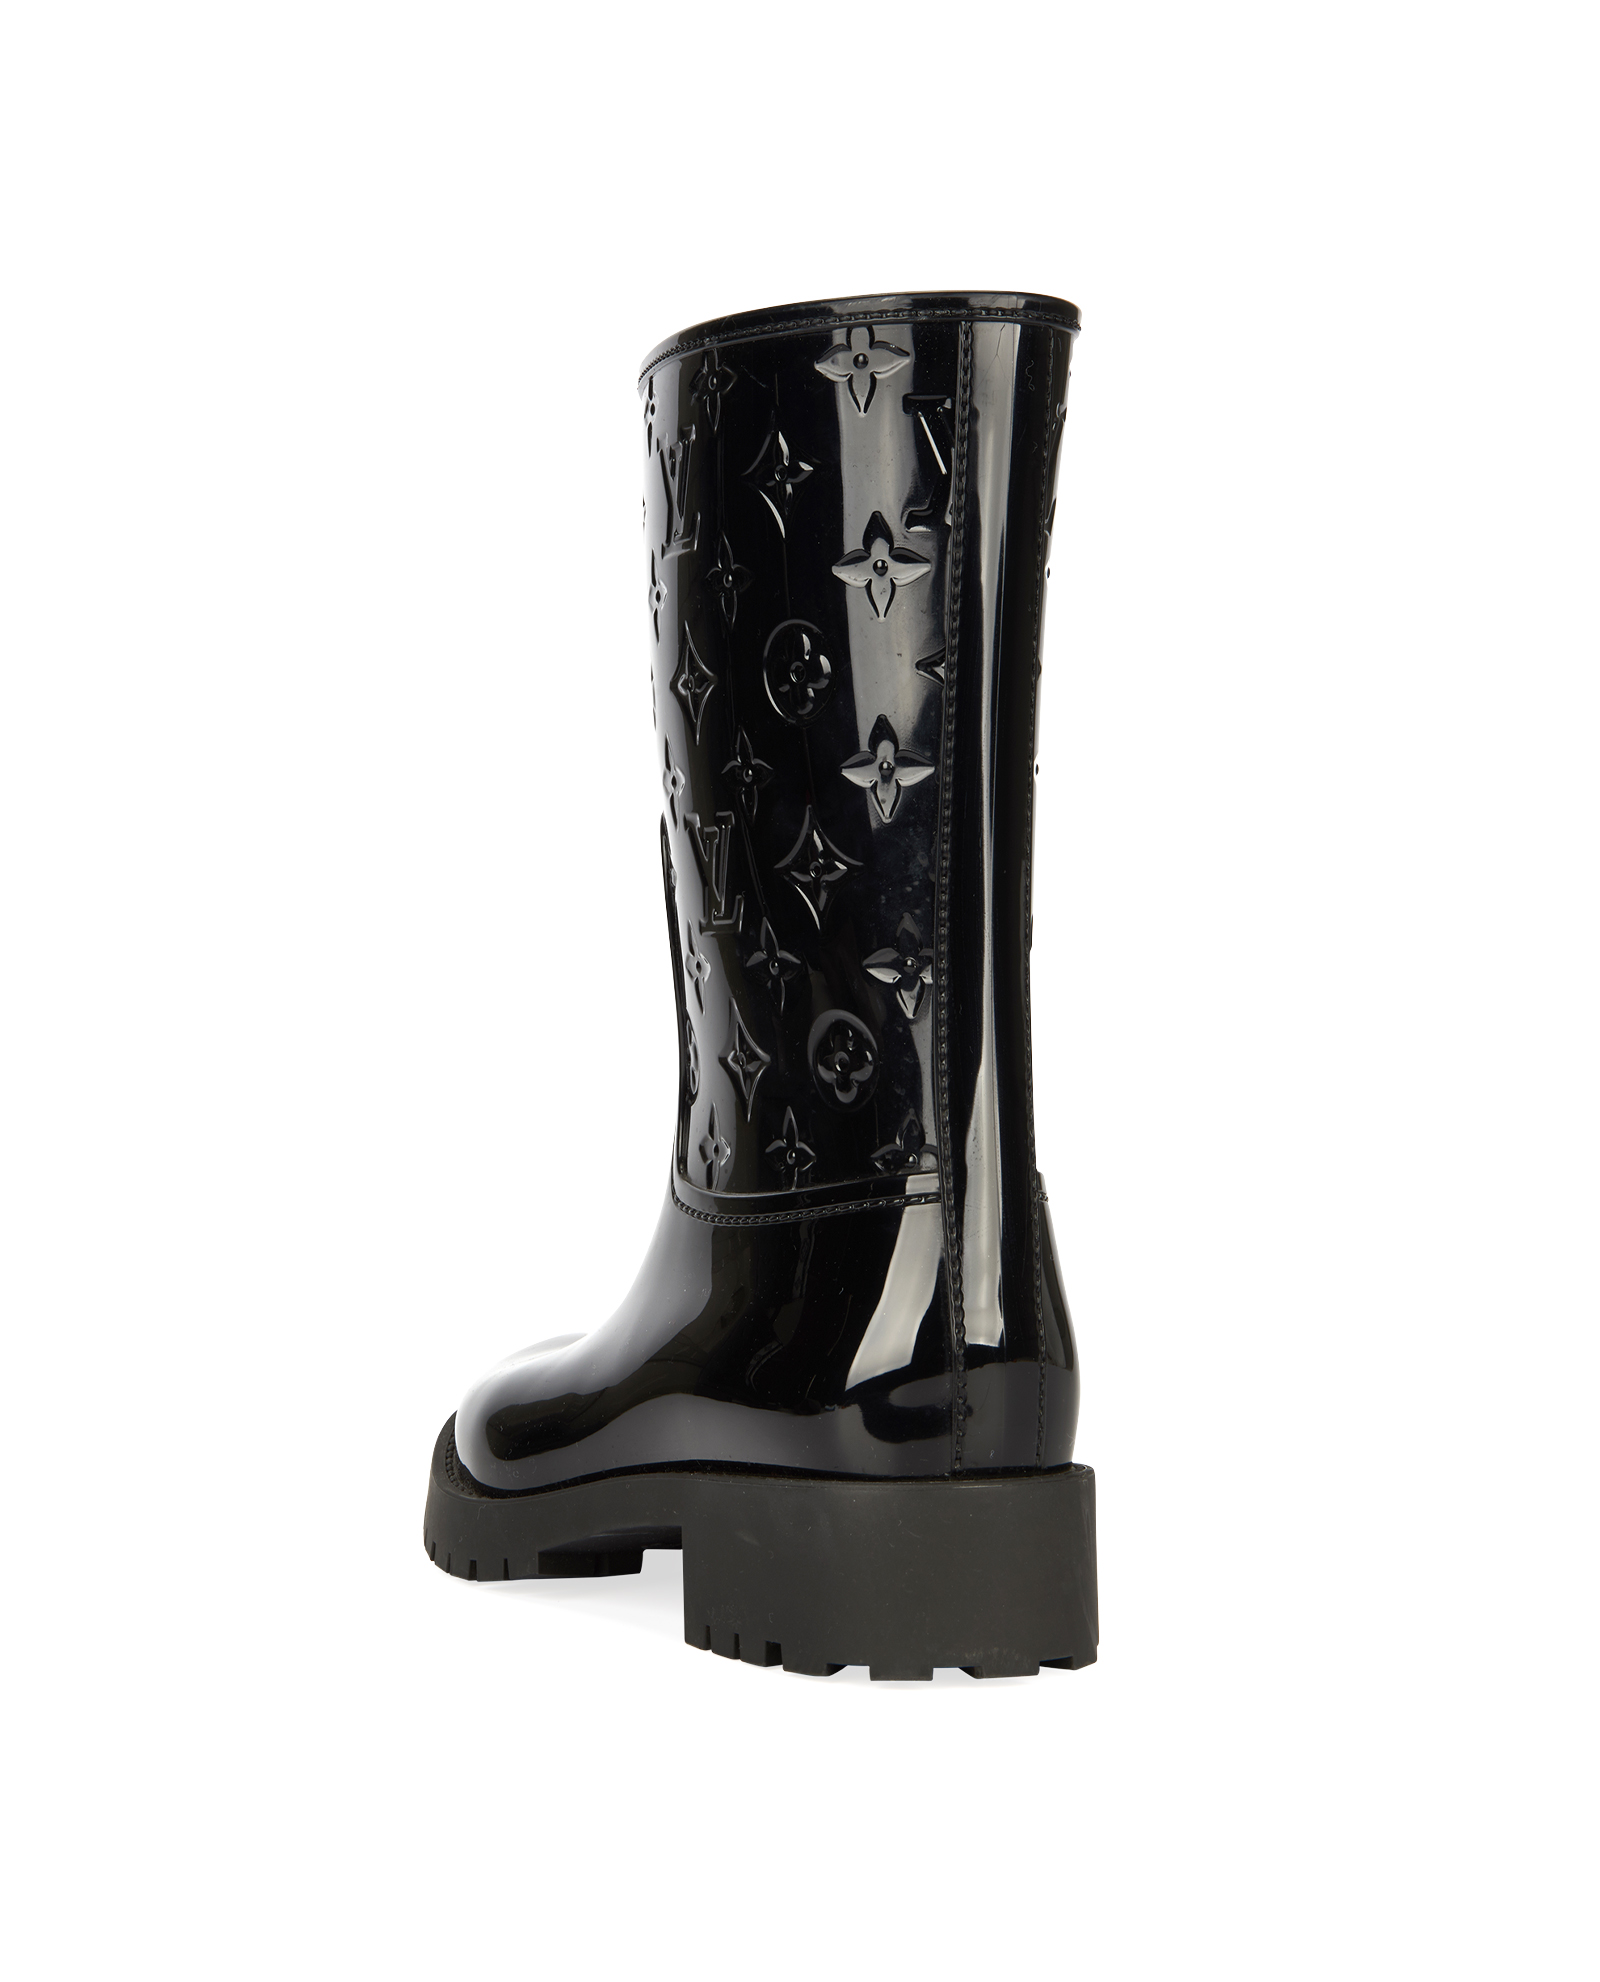 Wellington boots Louis Vuitton Black size 37 EU in Rubber - 32461483